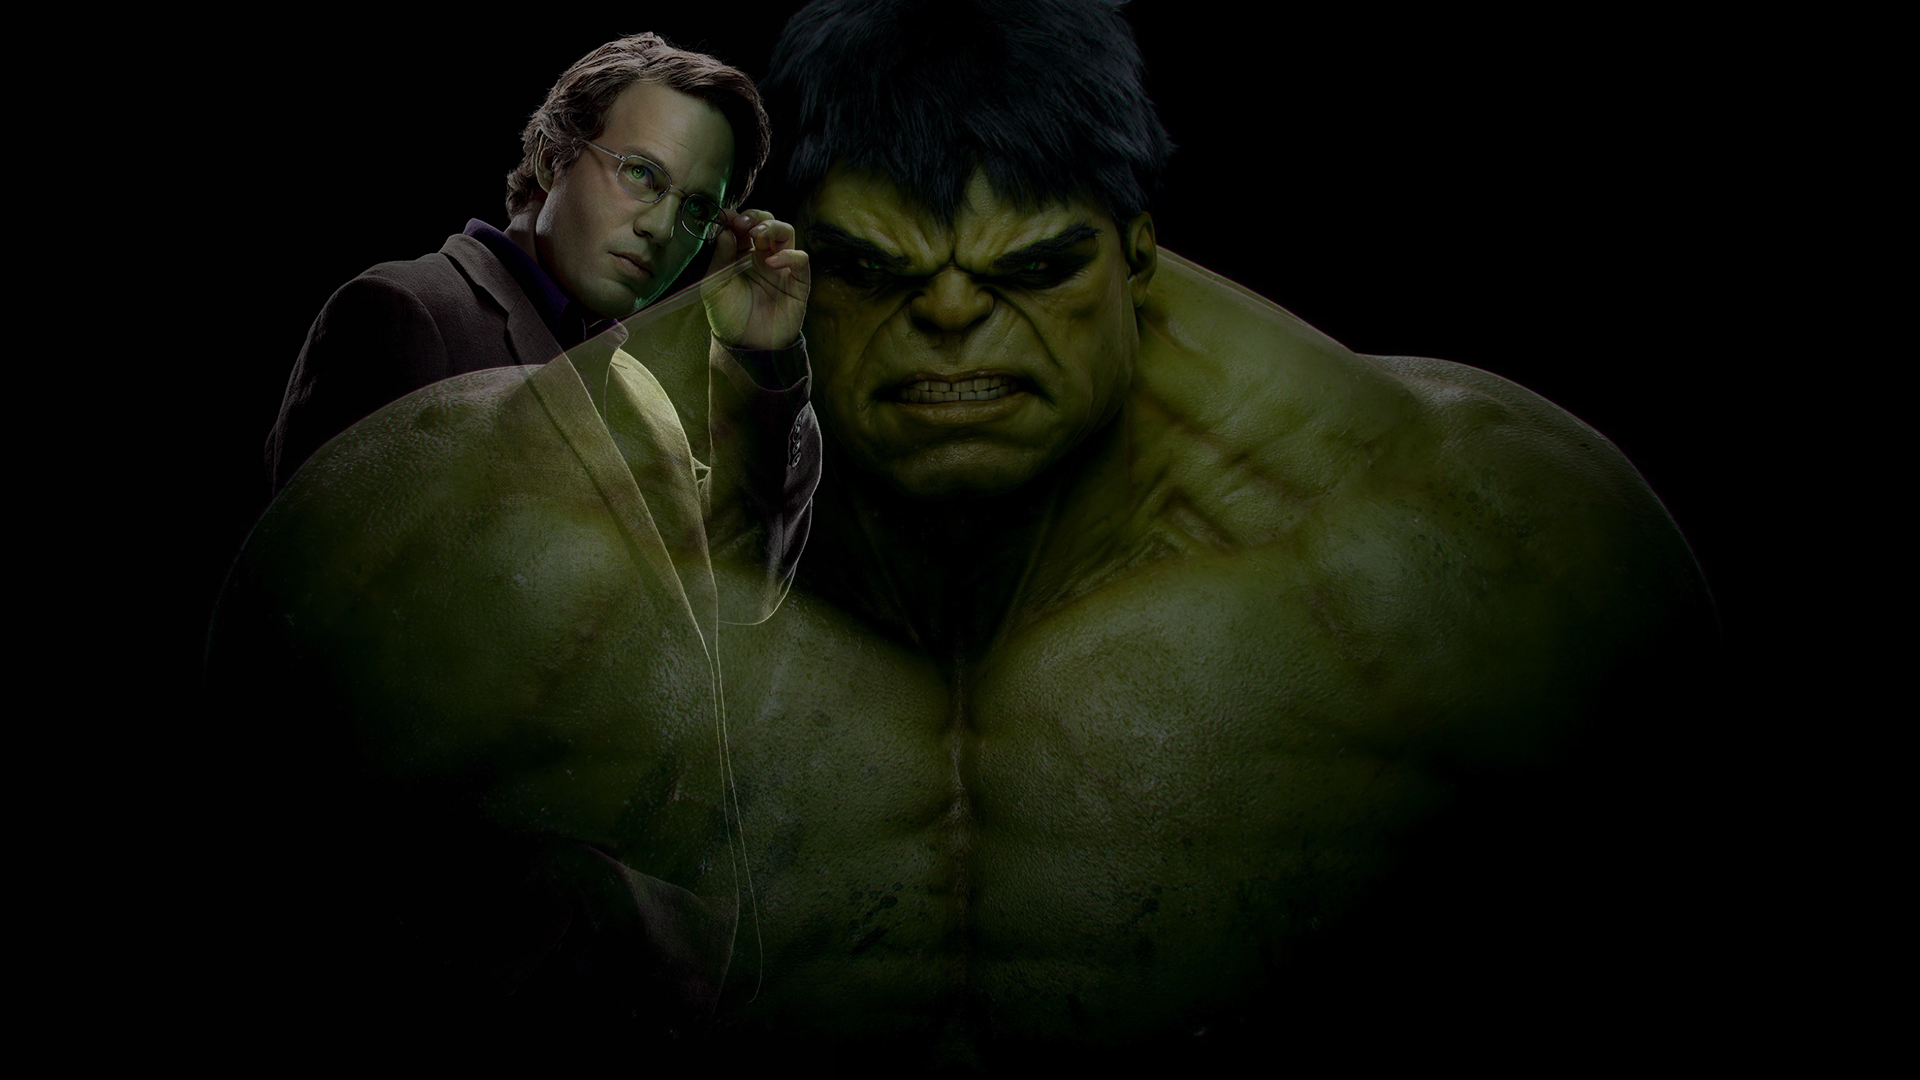 Download mobile wallpaper Hulk, Movie, The Avengers, Bruce Banner, Mark Ruffalo for free.